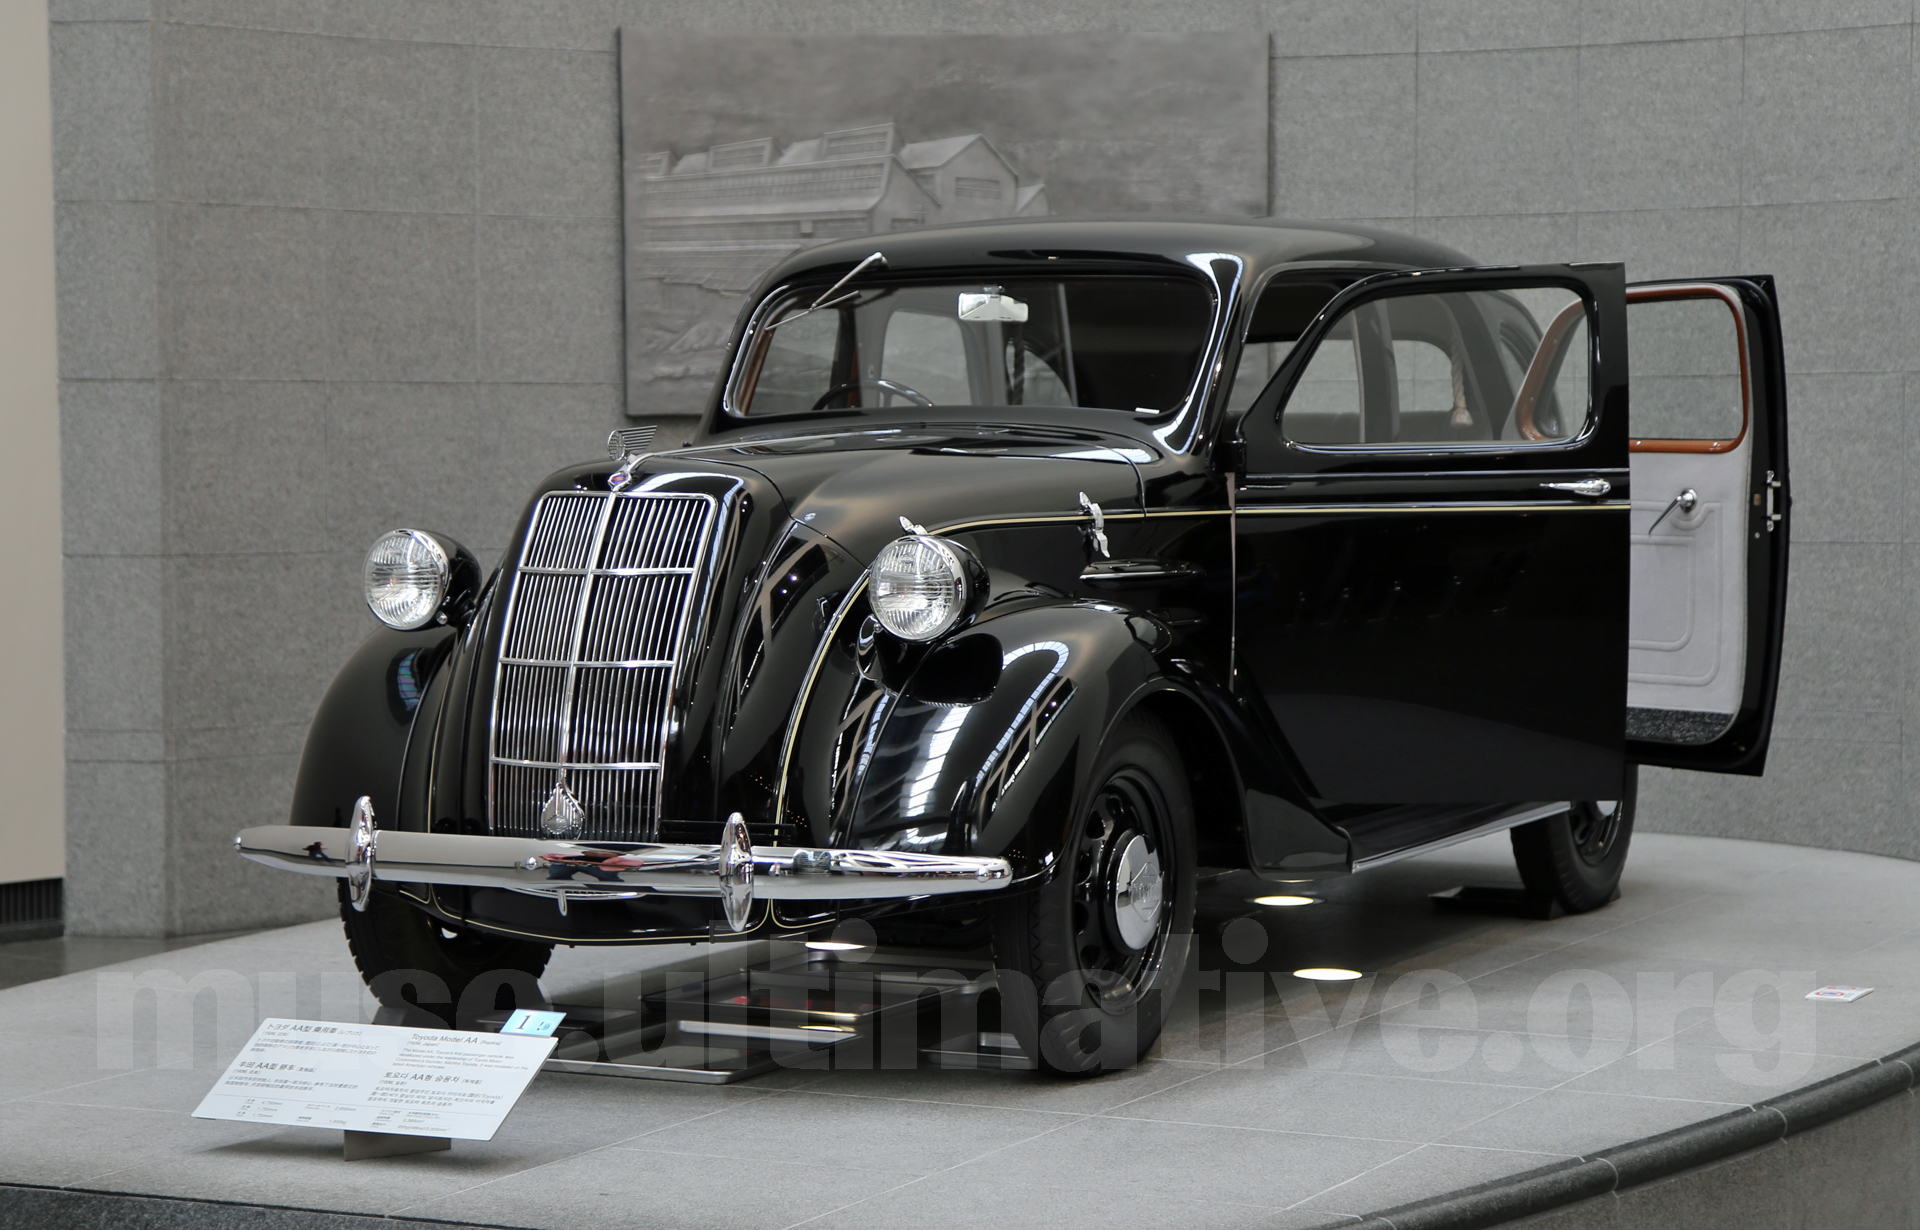 トヨダaa型乗用車レプリカを見に行こう 自動車博物館巡り